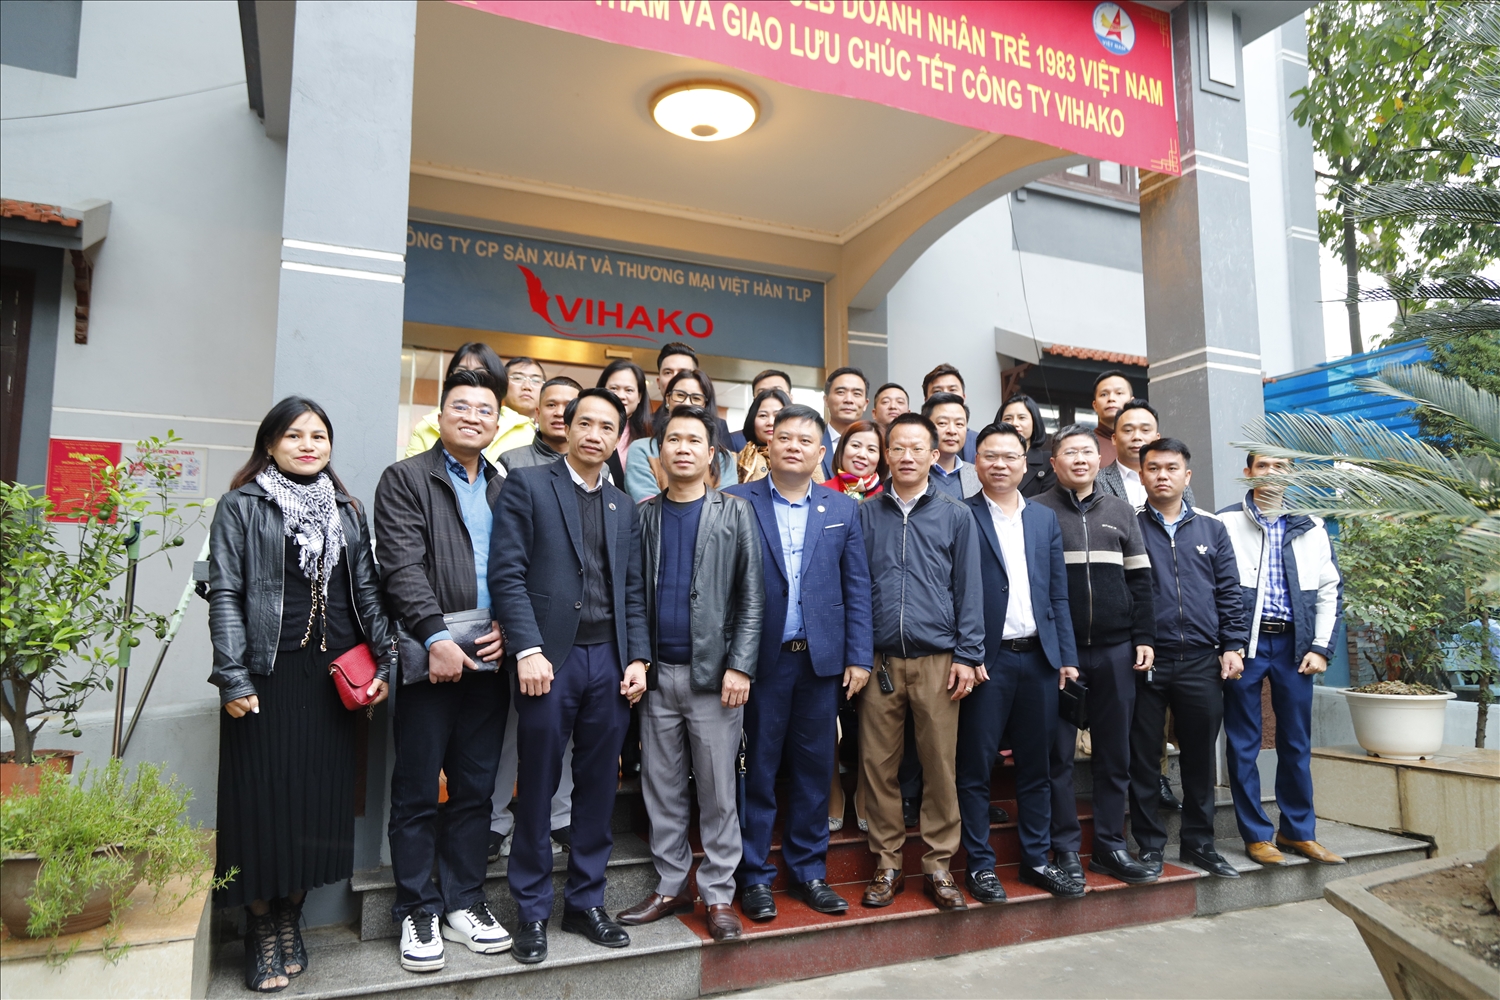 Các thành viên trong đoàn chụp ảnh lưu niệm tại Công ty CP sản xuất và thương mại Việt Nam TLP 